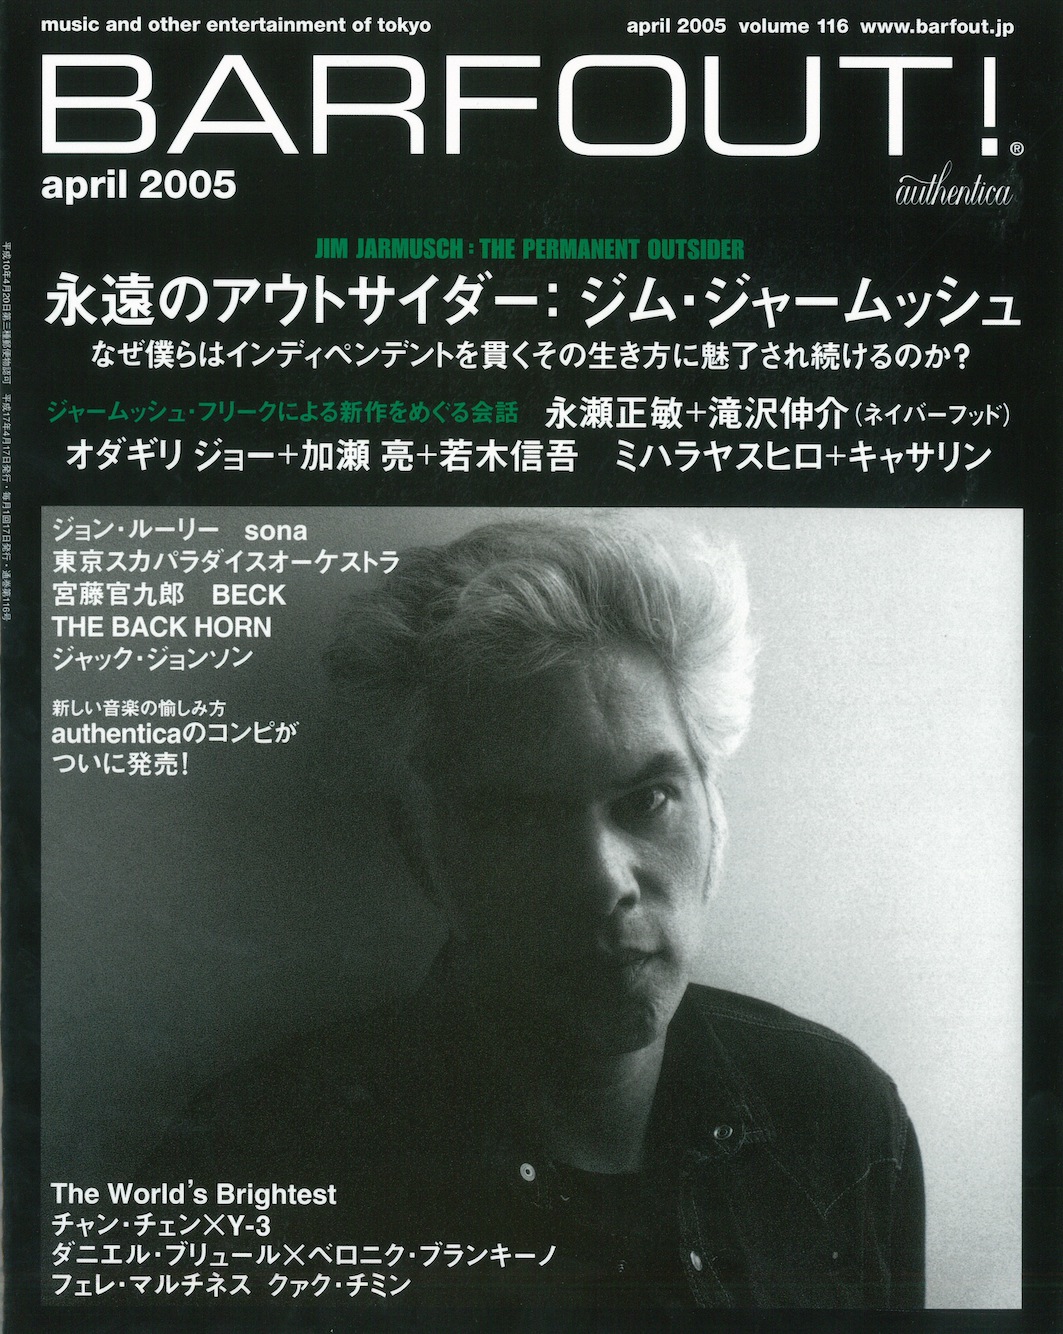 APRIL 2005 VOLUME 116